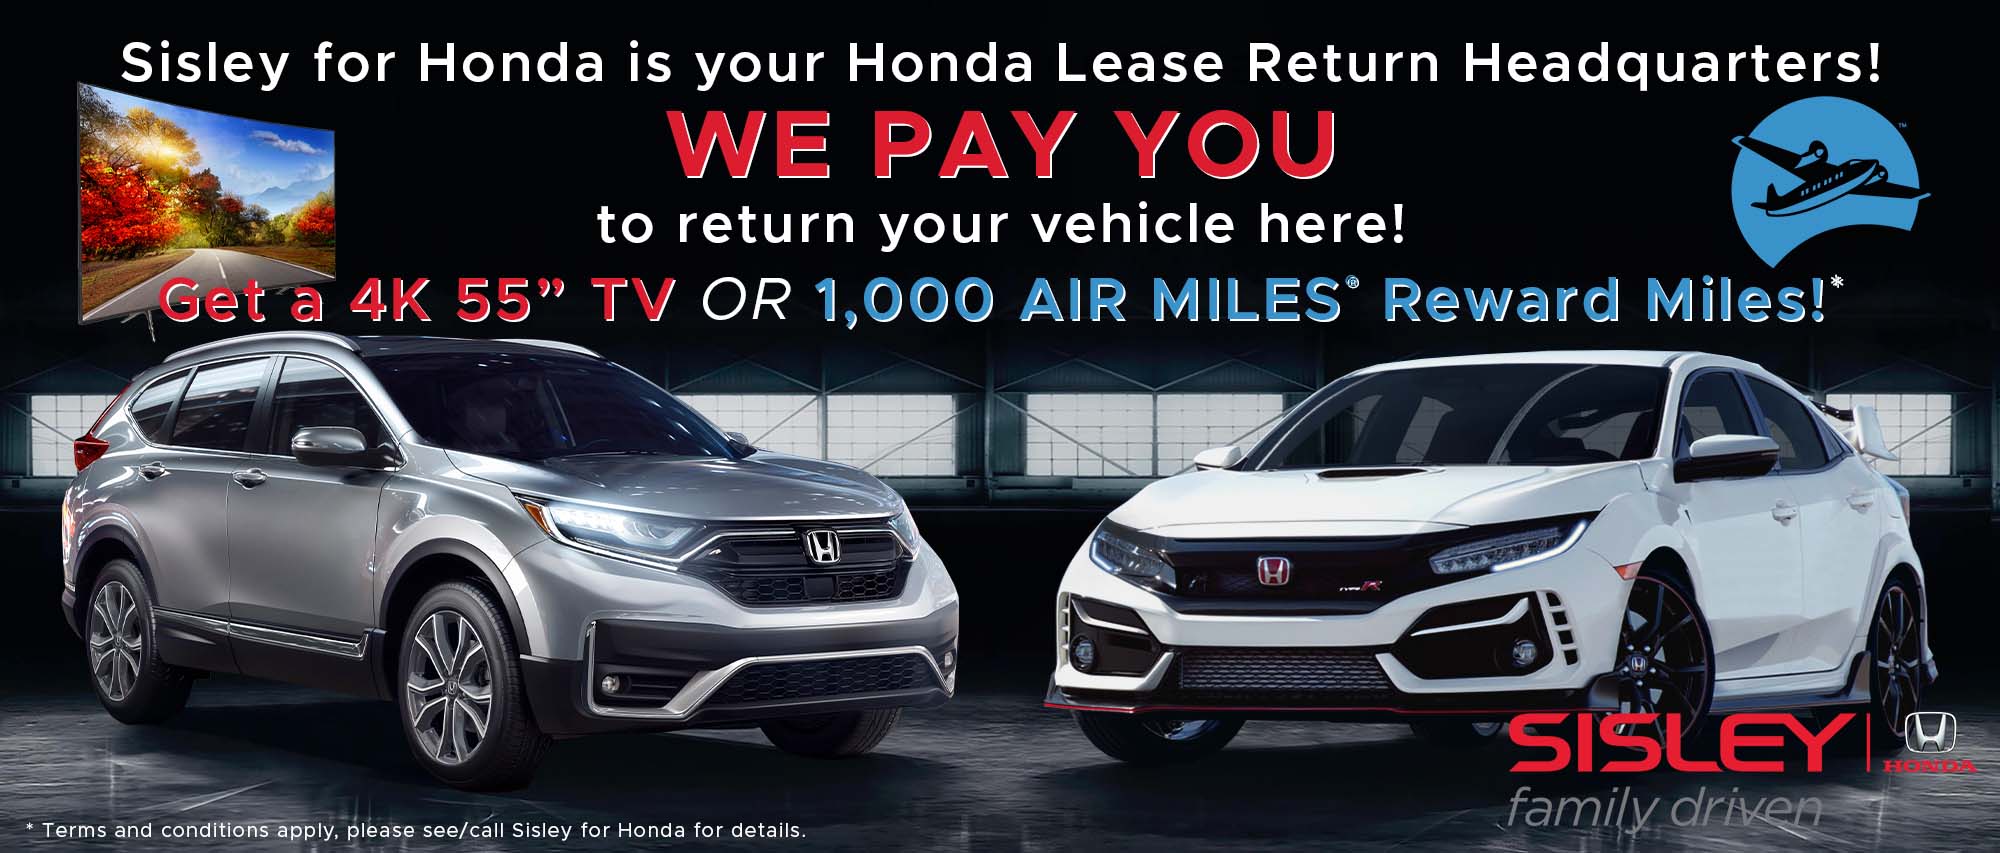 Honda Lease Return HQ